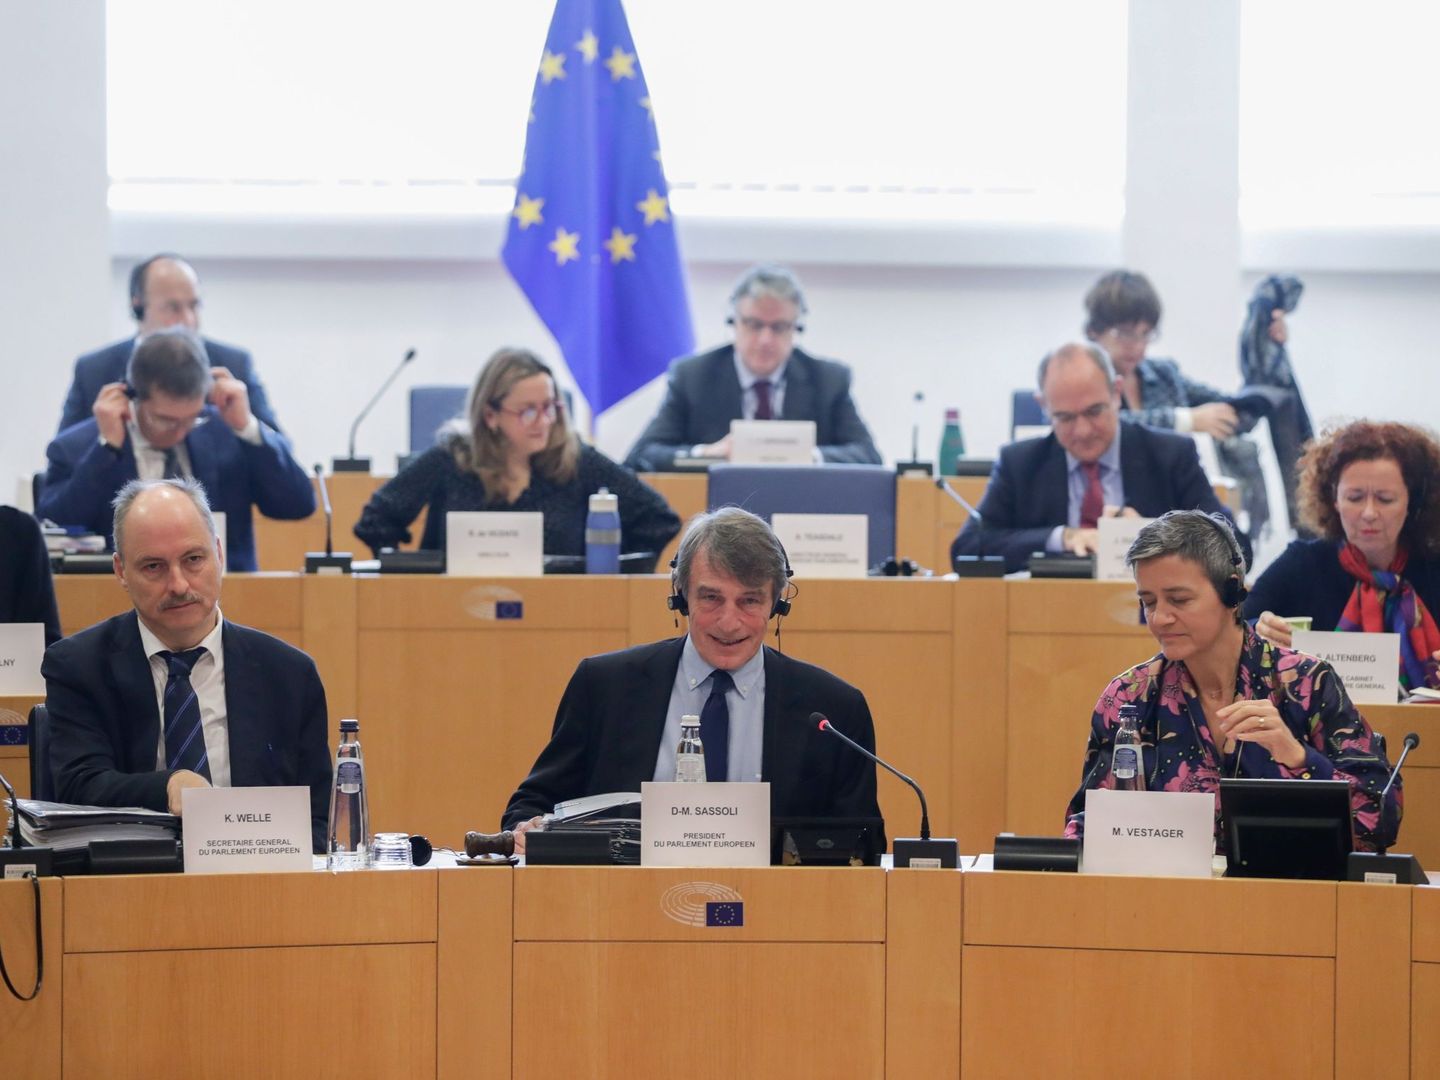 Klaus Welle, secretario general del Parlamento Europeo, a la derecha del presidente. (Reuters)